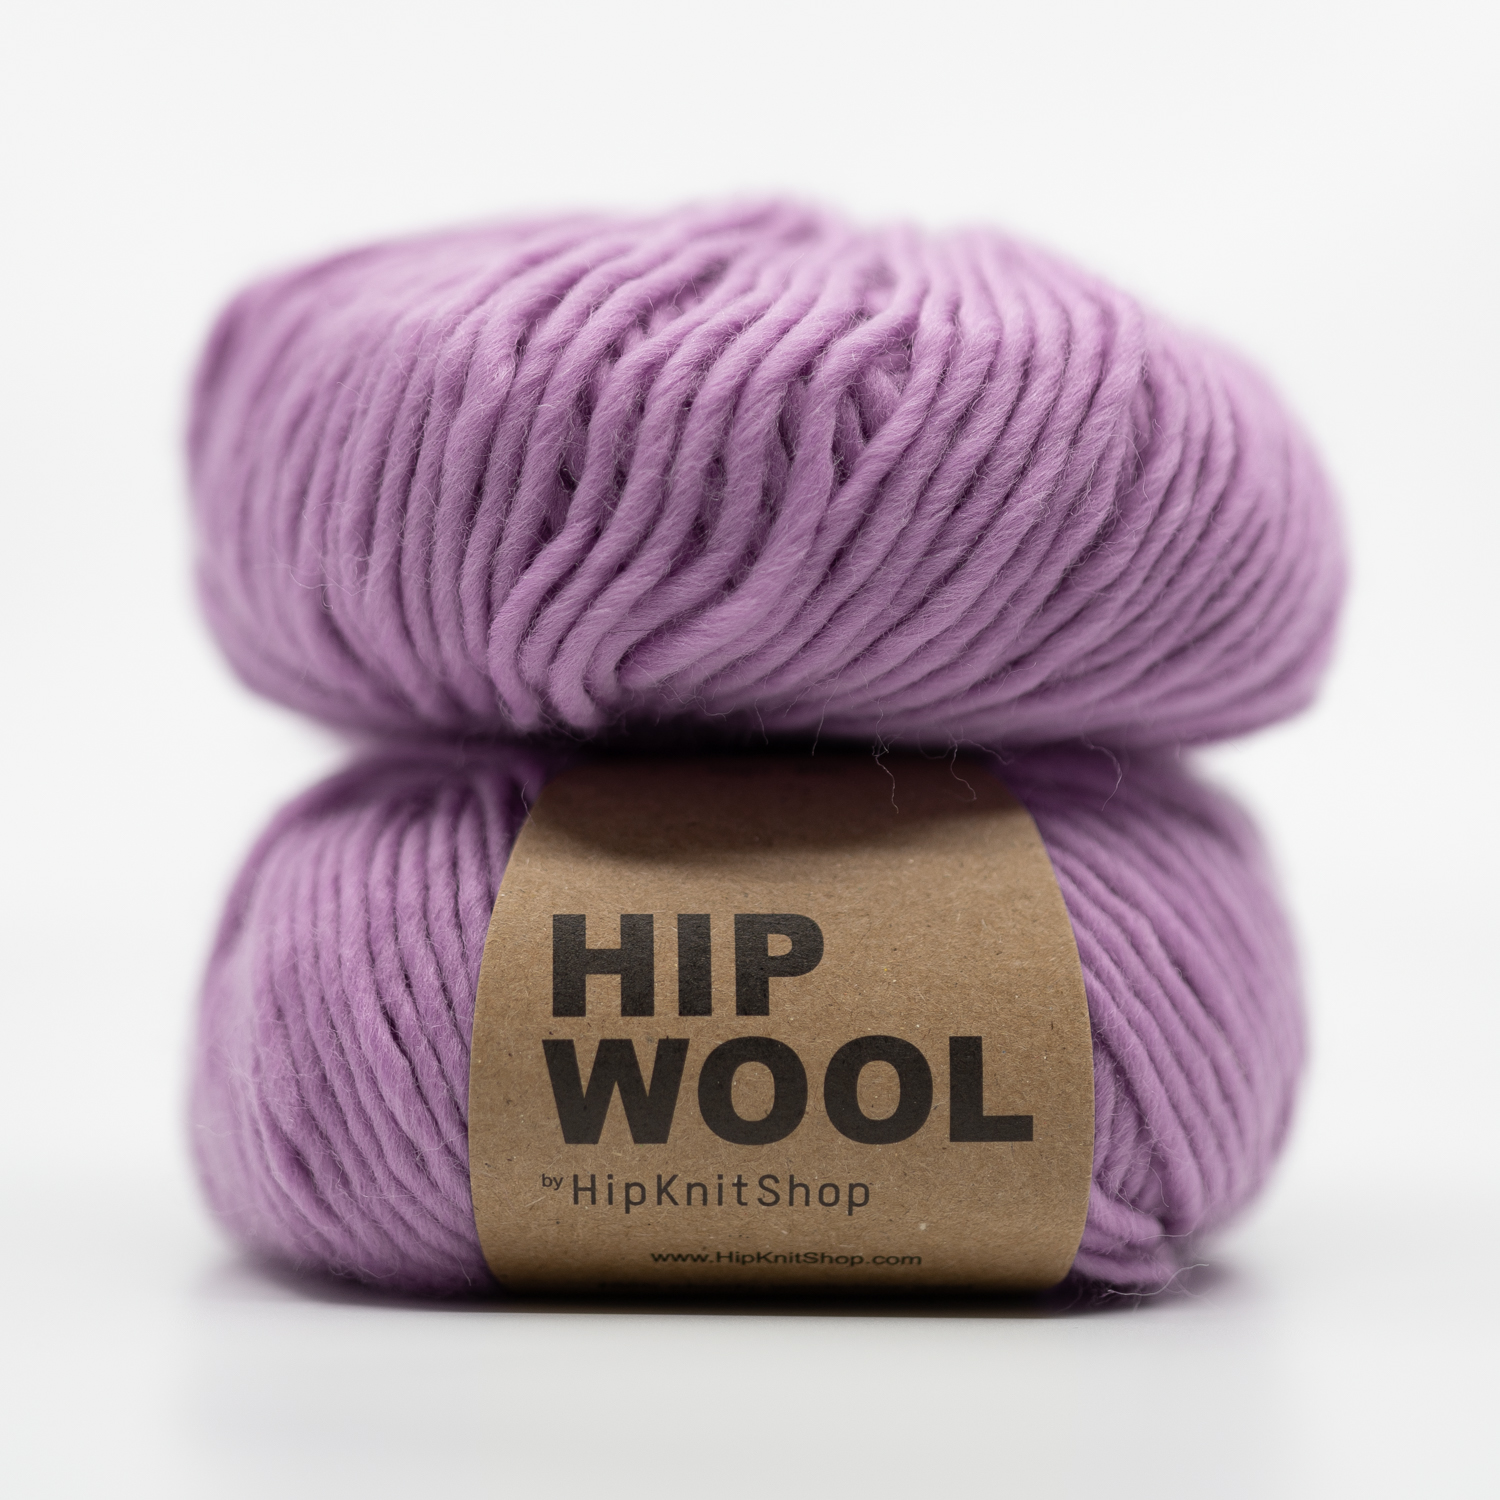 Hip Wool - spin around violet